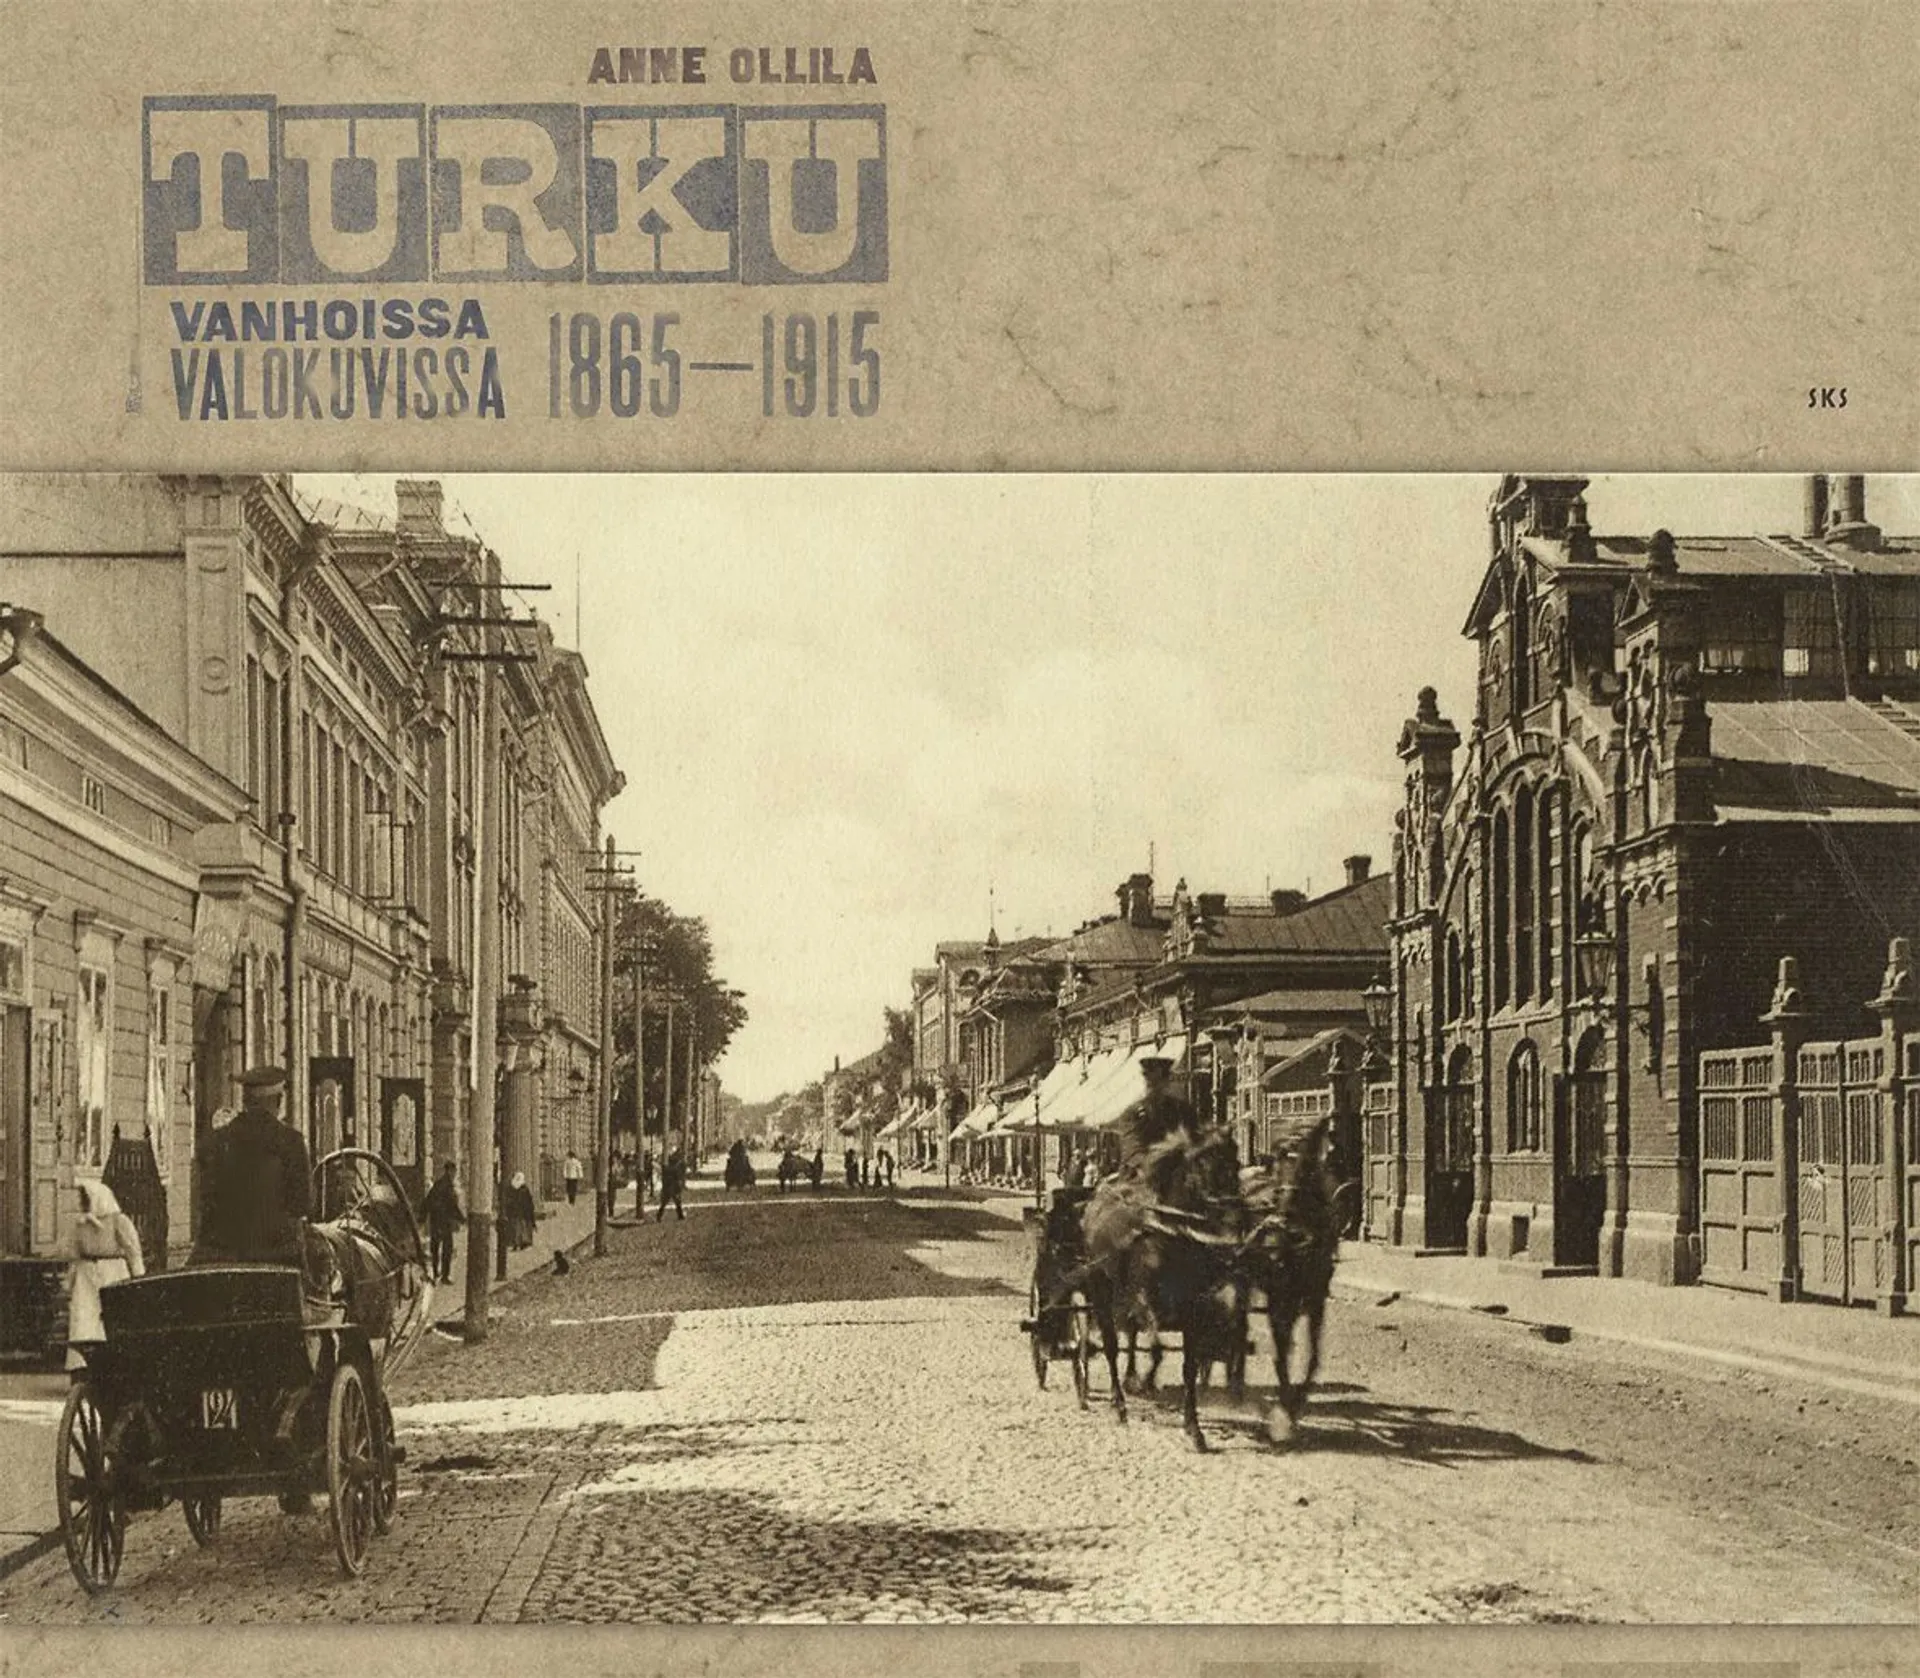 Ollila, Turku vanhoissa valokuvissa 1865-1915